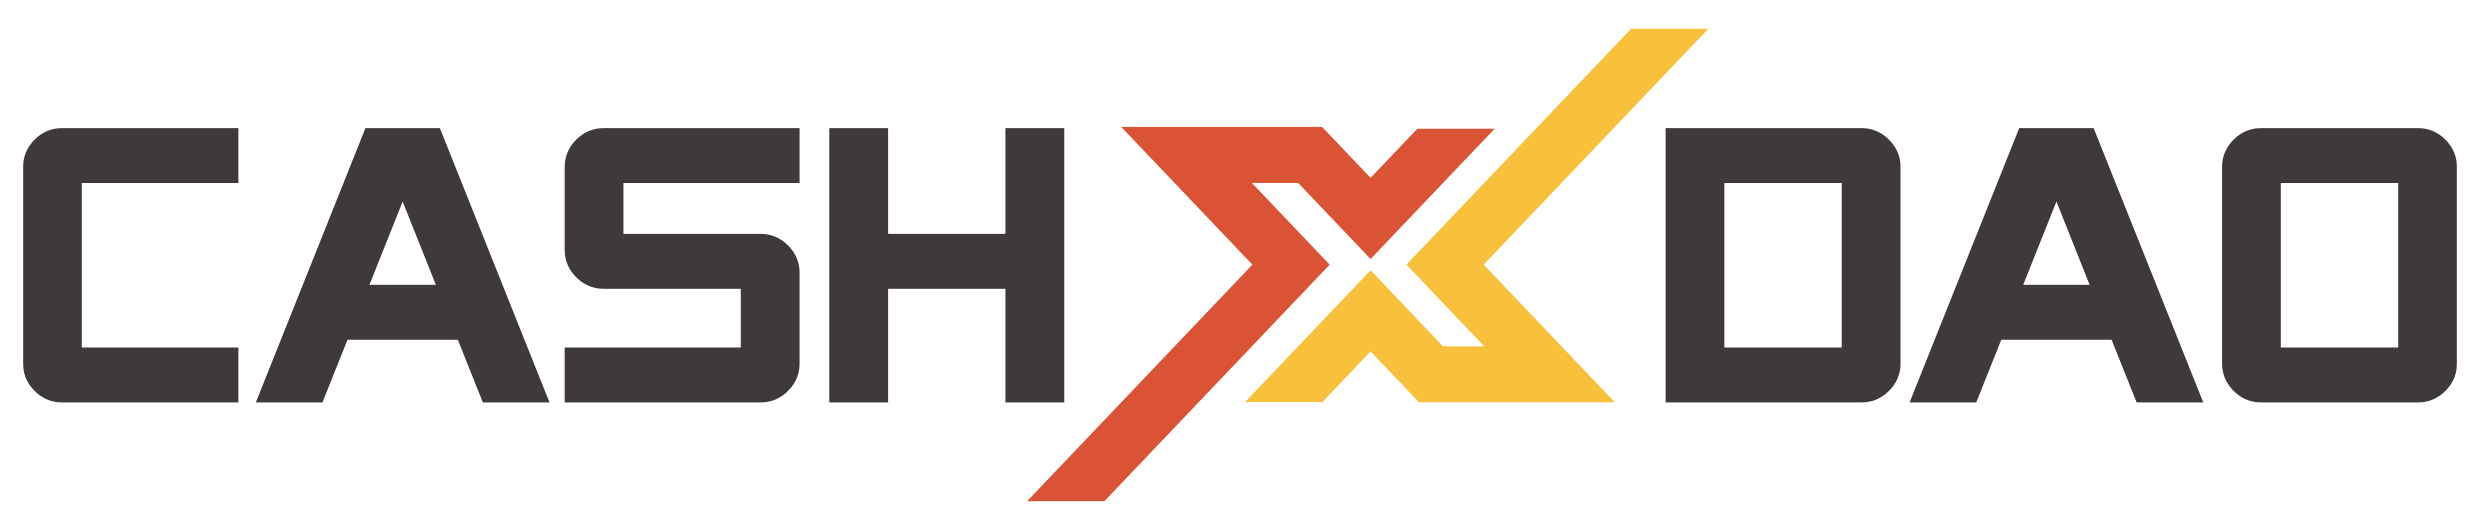 CASH X DAO Logo.png